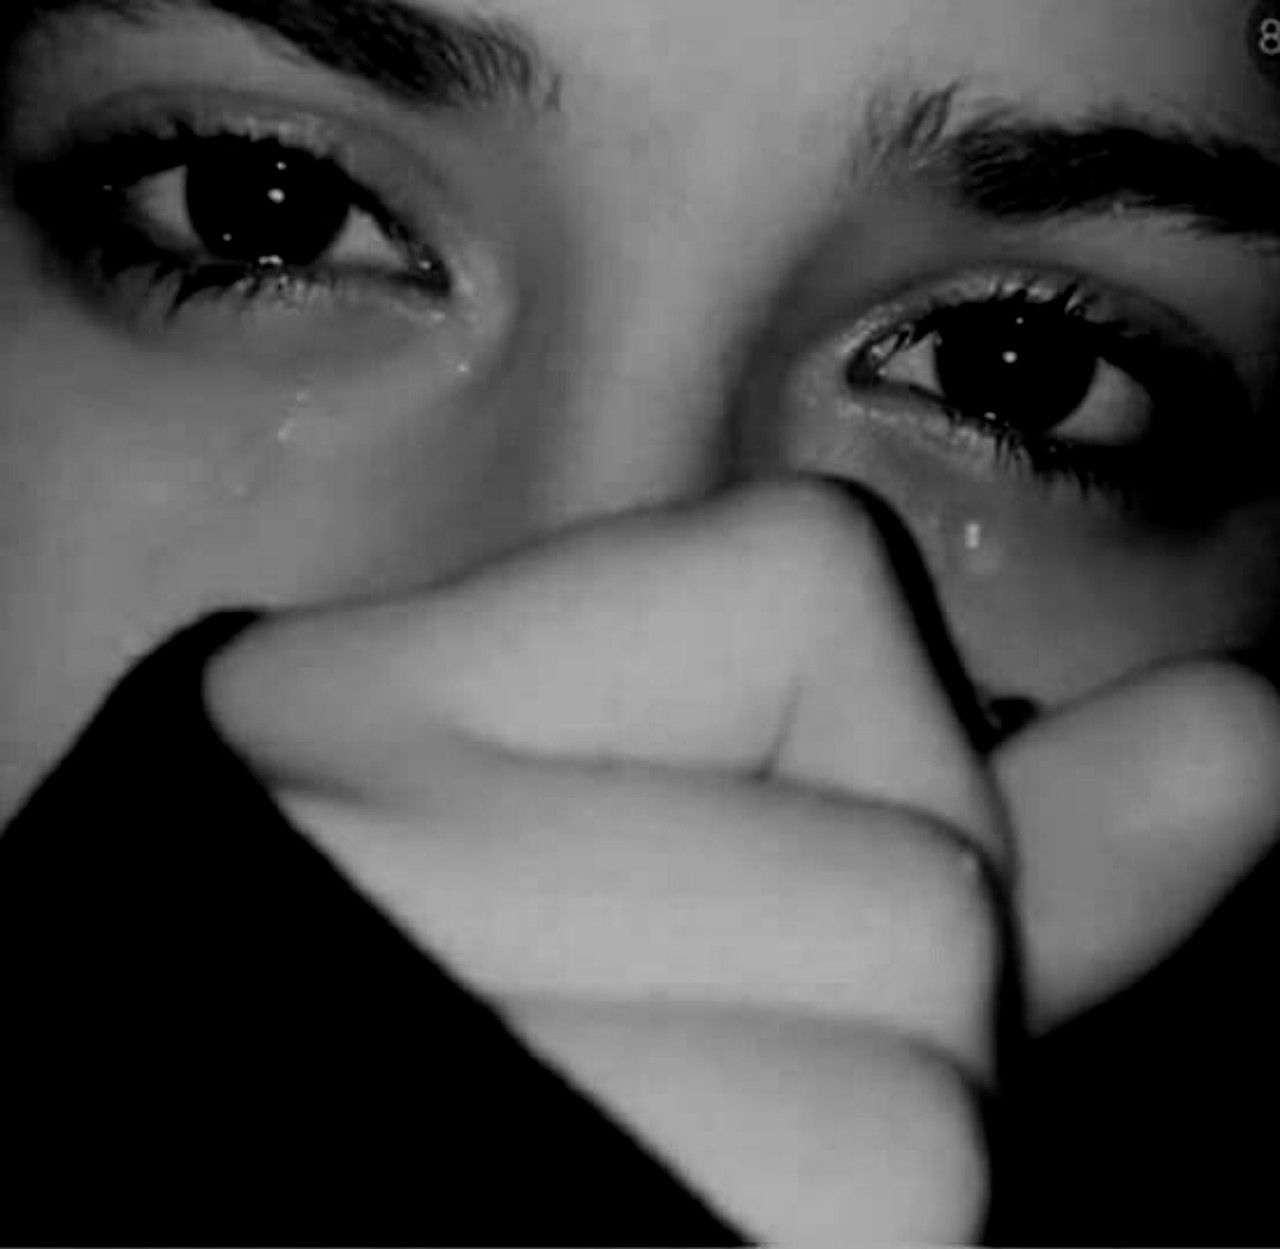 Все забыто решено слезы. Плачущая девушка. Девушка с заплаканными глазами. Красивая девушка плачет. Девушка в слезах.